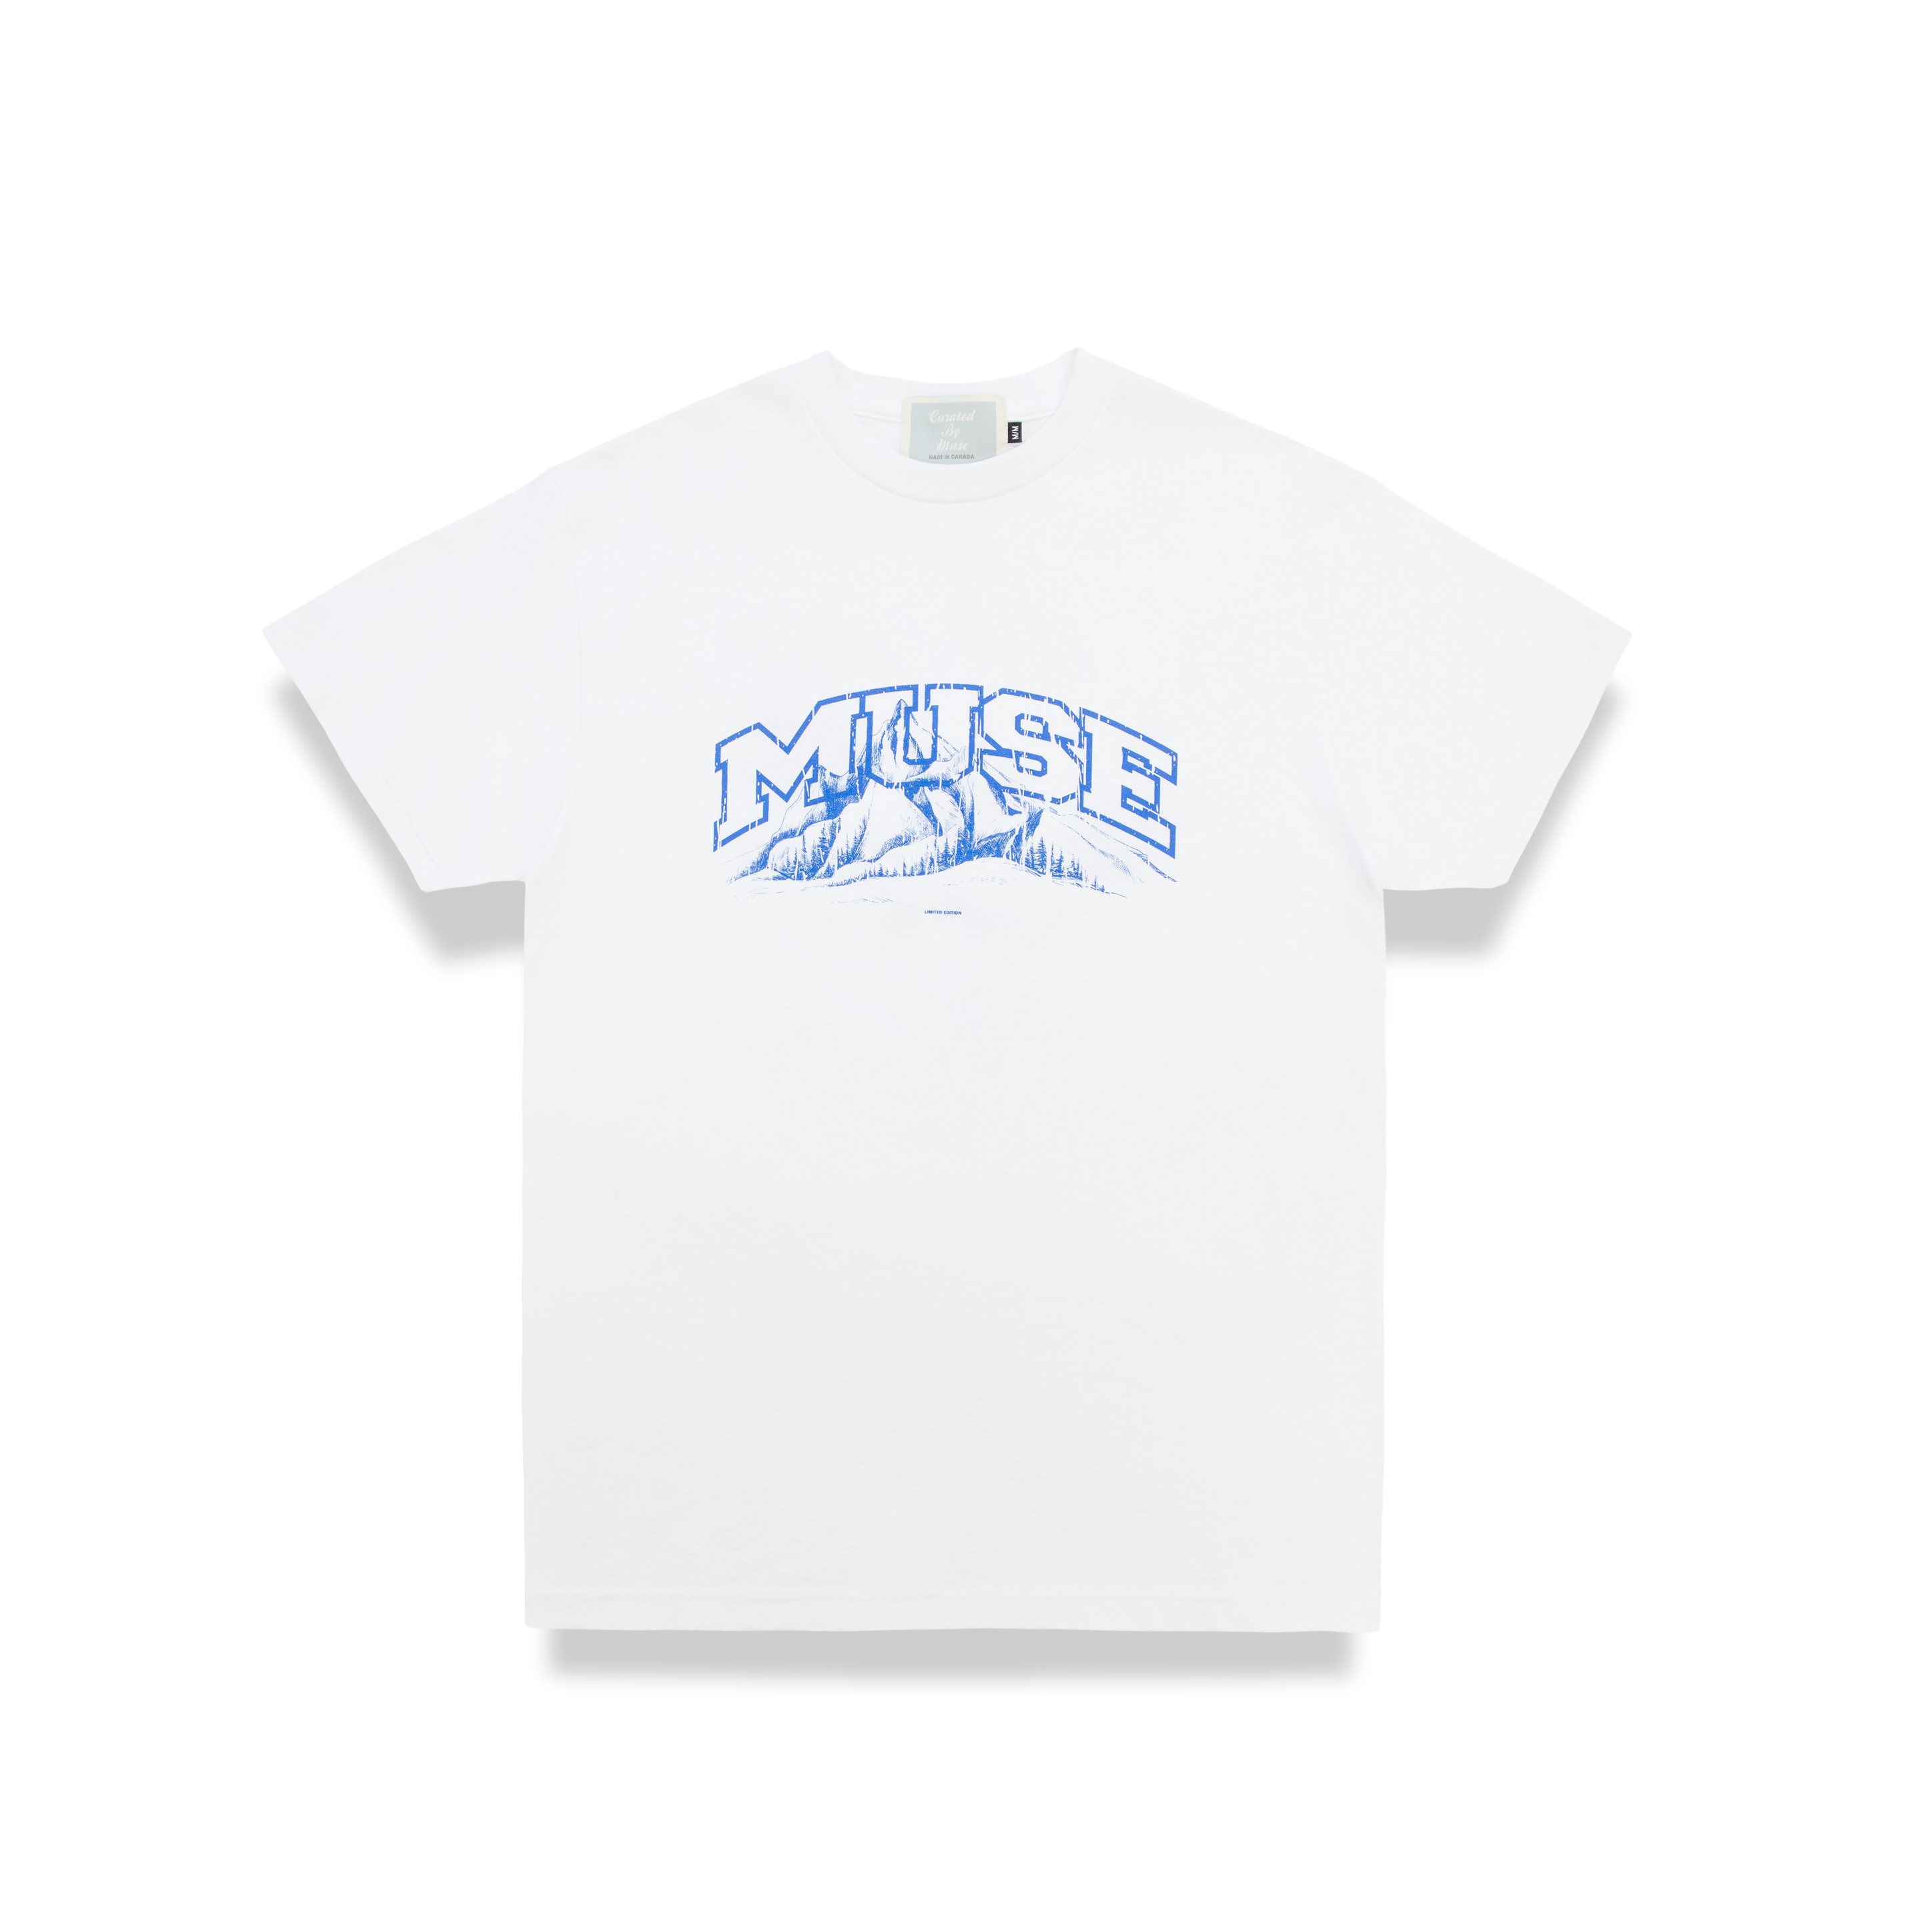 JMC x CBM T-shirt - White